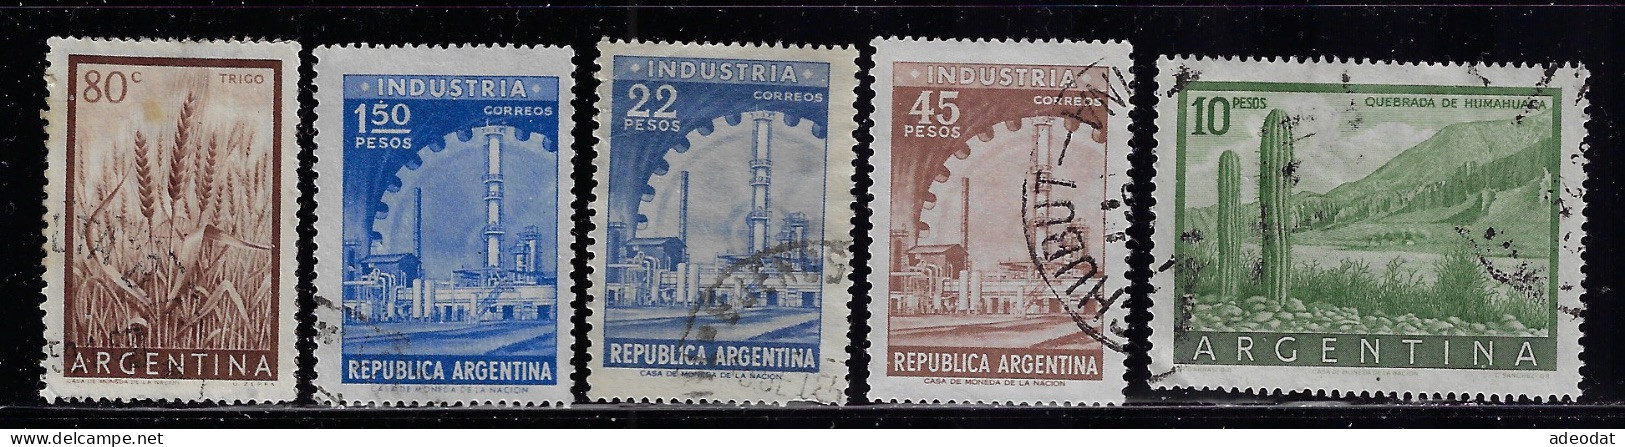 ARGENTINA  1954  SCOTT #634,636,640,824,.. USED - Gebraucht